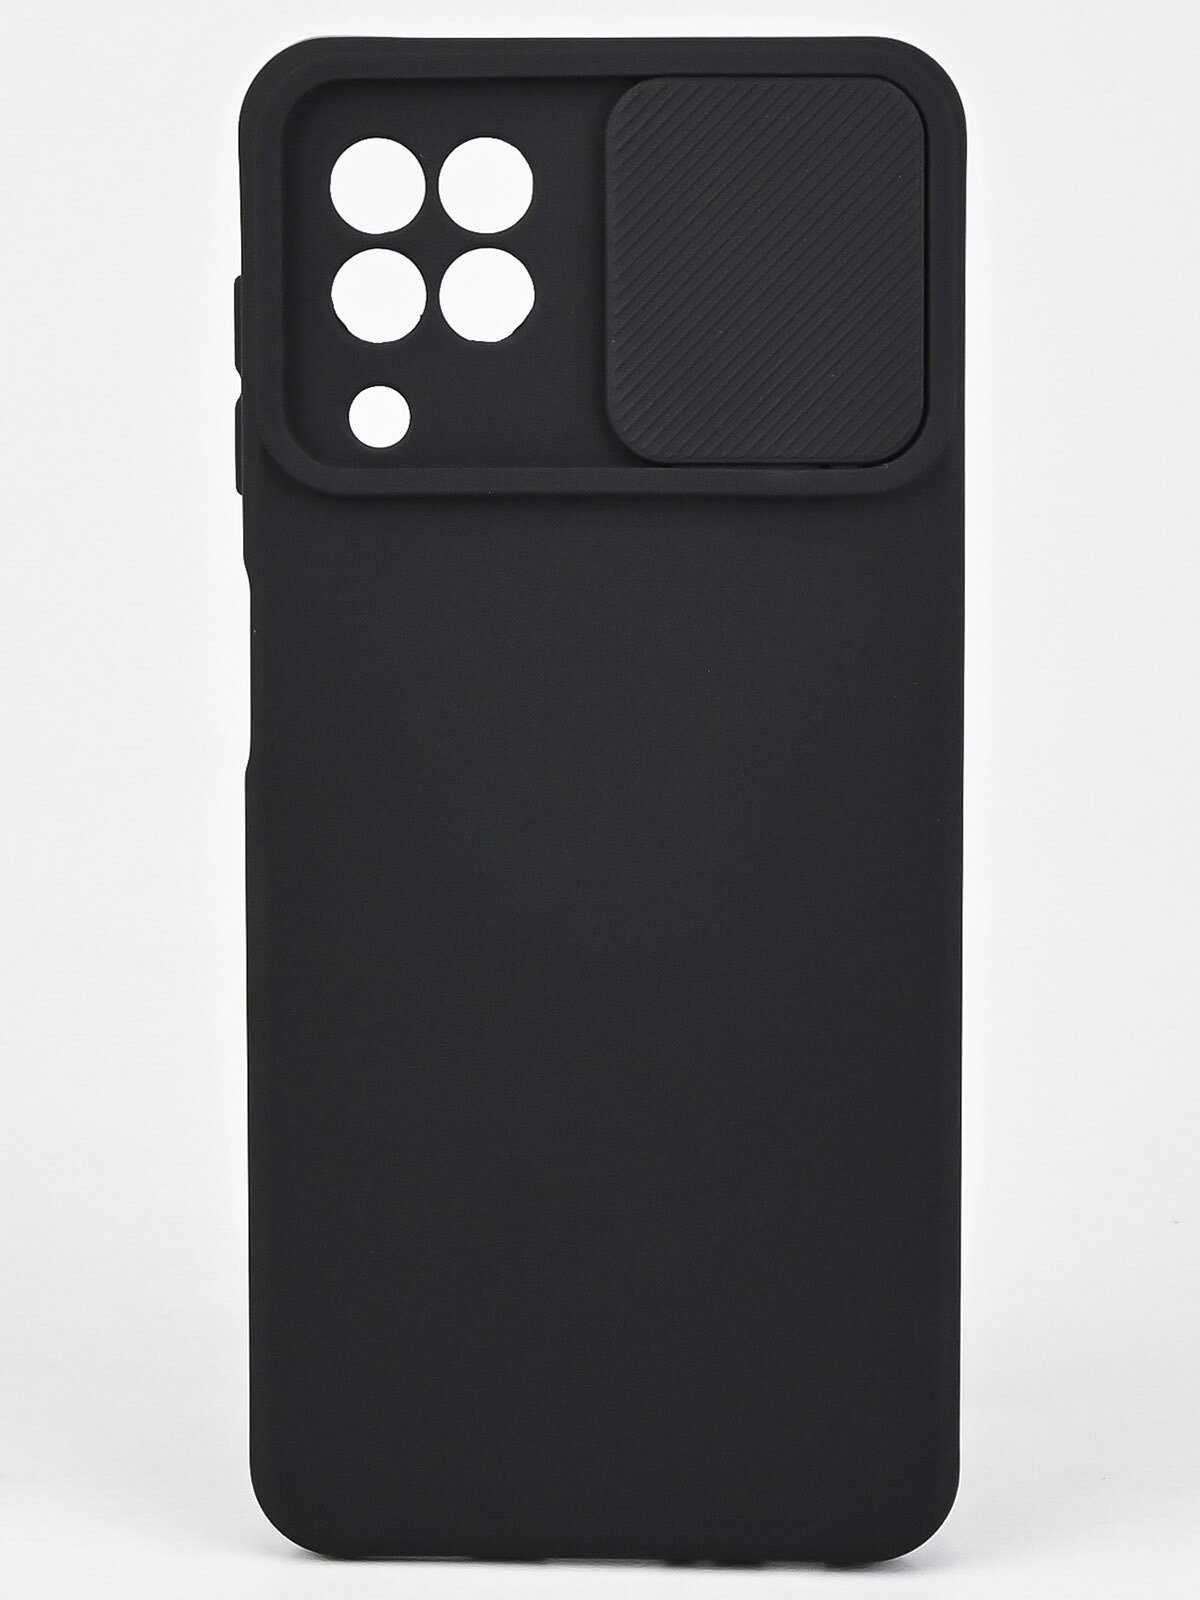 Силиконовый чехол бампер на Самсунг галакси А22, М32, М22 4G со шторкой, защитная противоударная накладка на телефон Samsung Galaxy A22, M32, M22 4G с защитой камеры